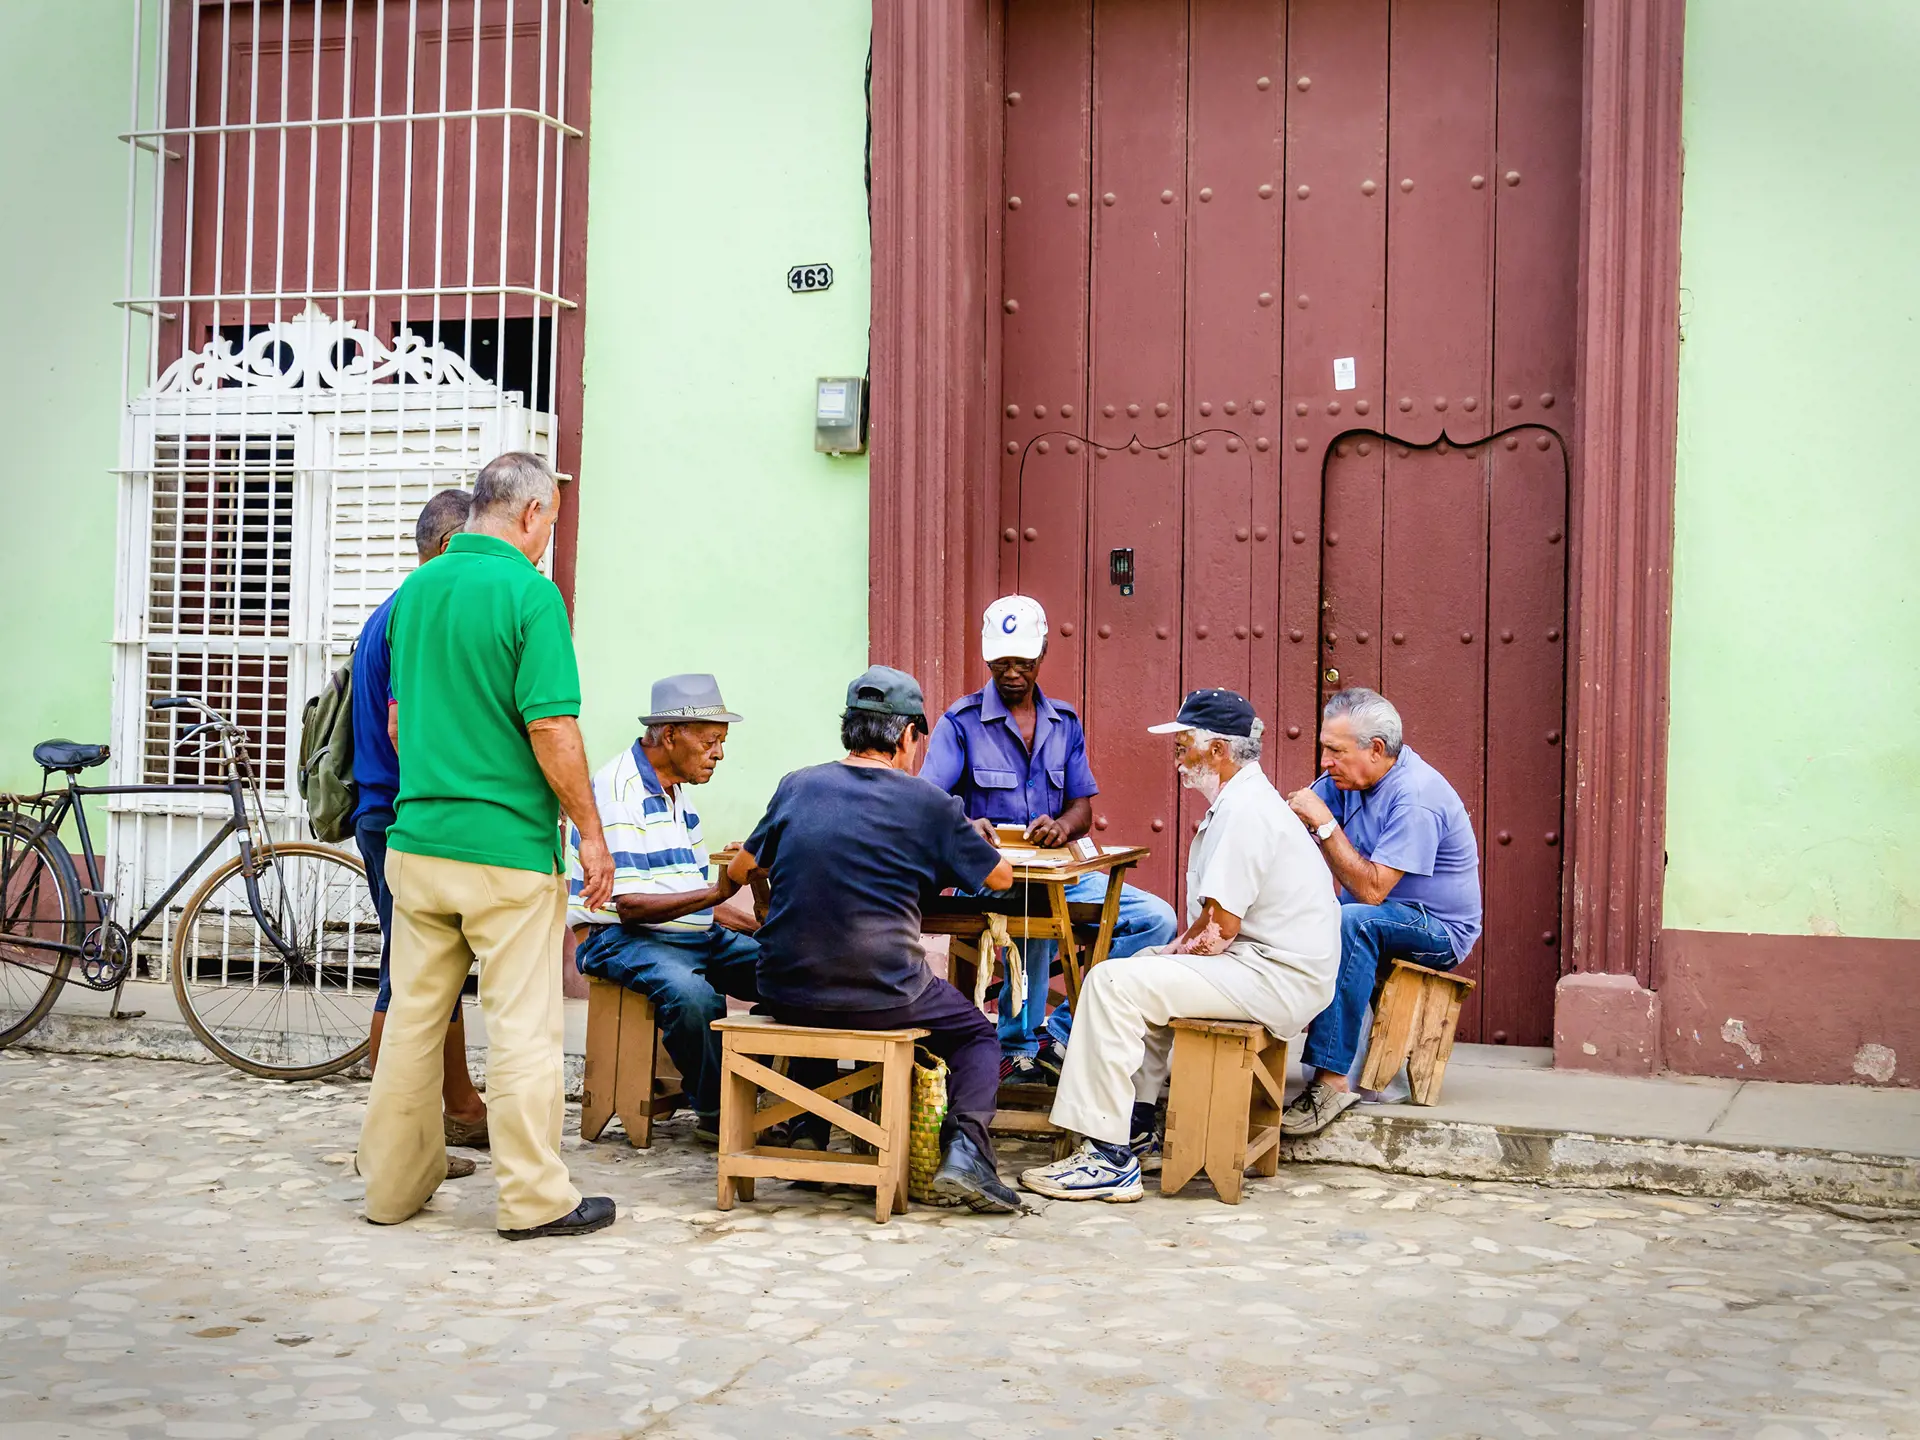 GADELIV - I møder de livsglade cubanere, der lever deres liv i byernes charmerende gader.